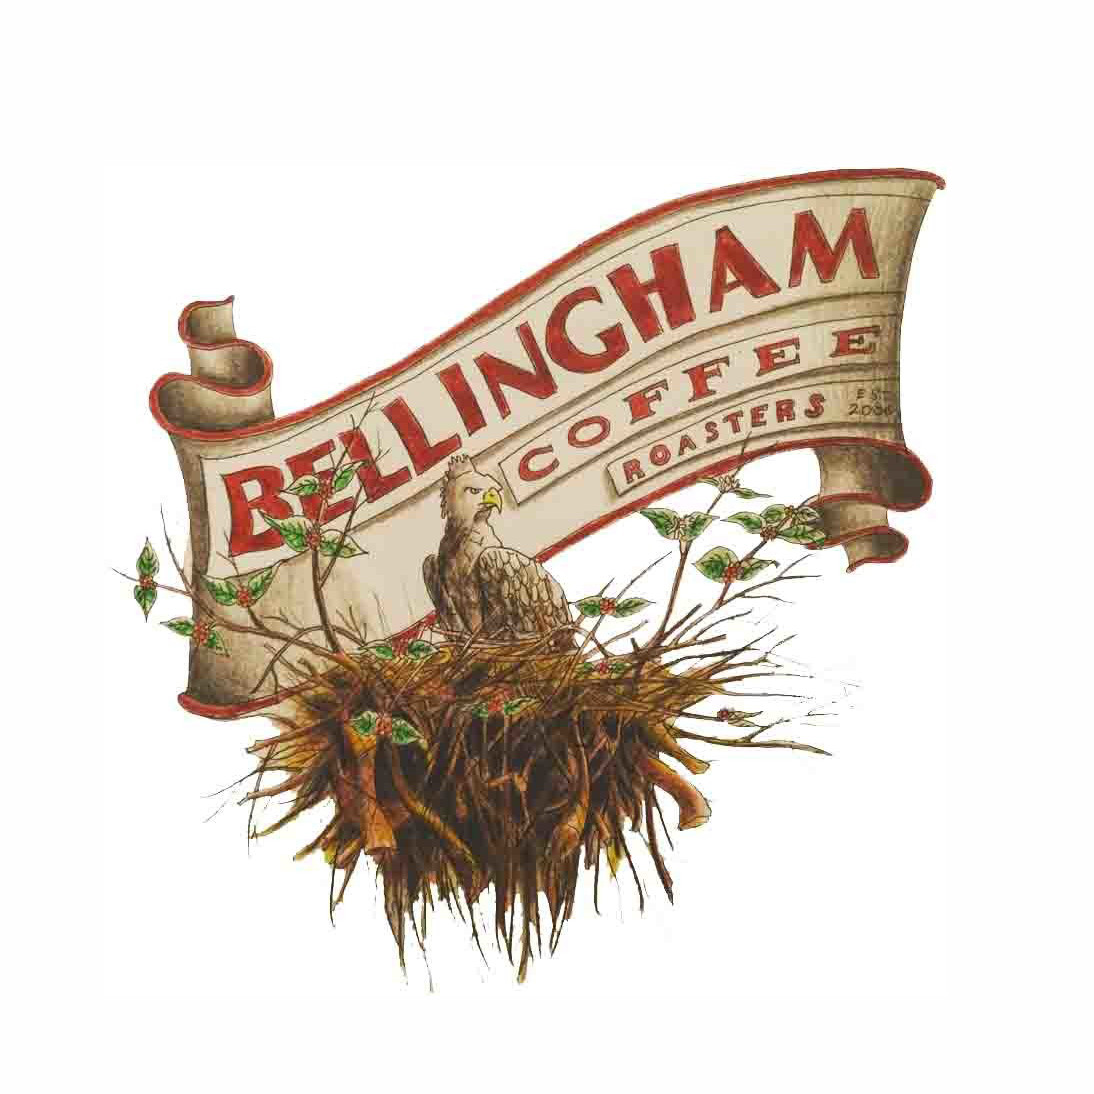 Bellingham Coffee Roasters